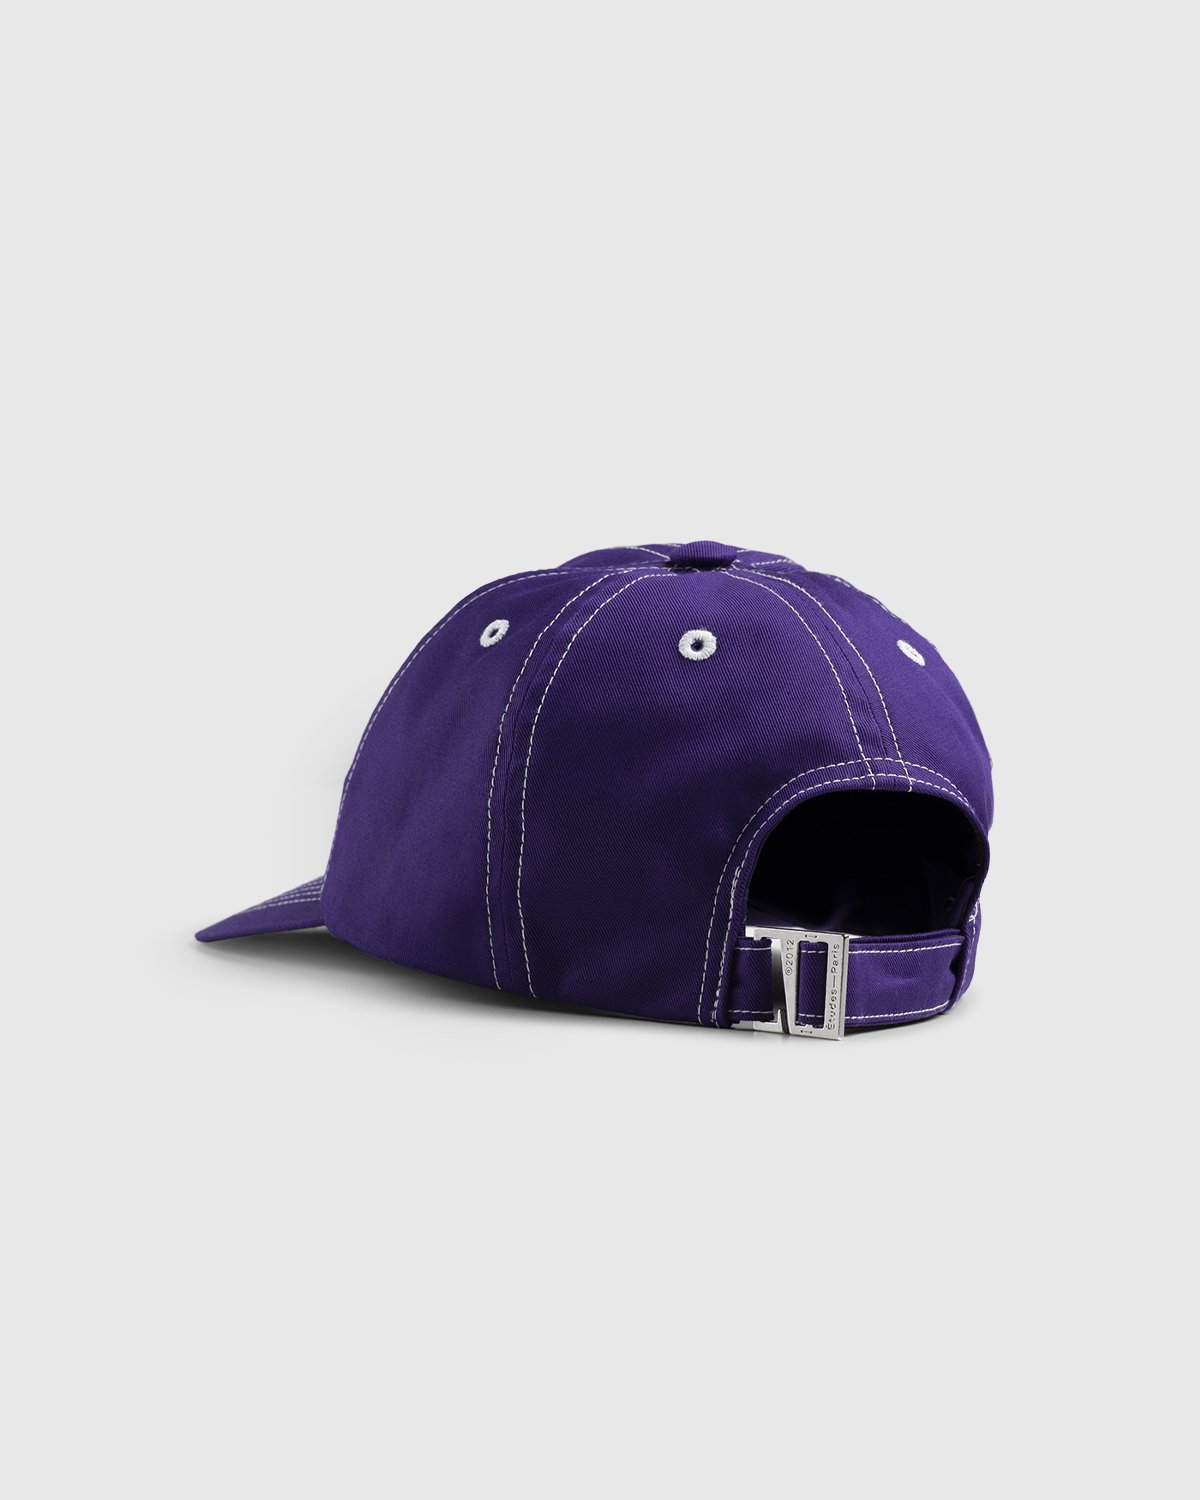 Martine Syms x Études - Booster MS Purple Cap - Accessories - Purple - Image 3